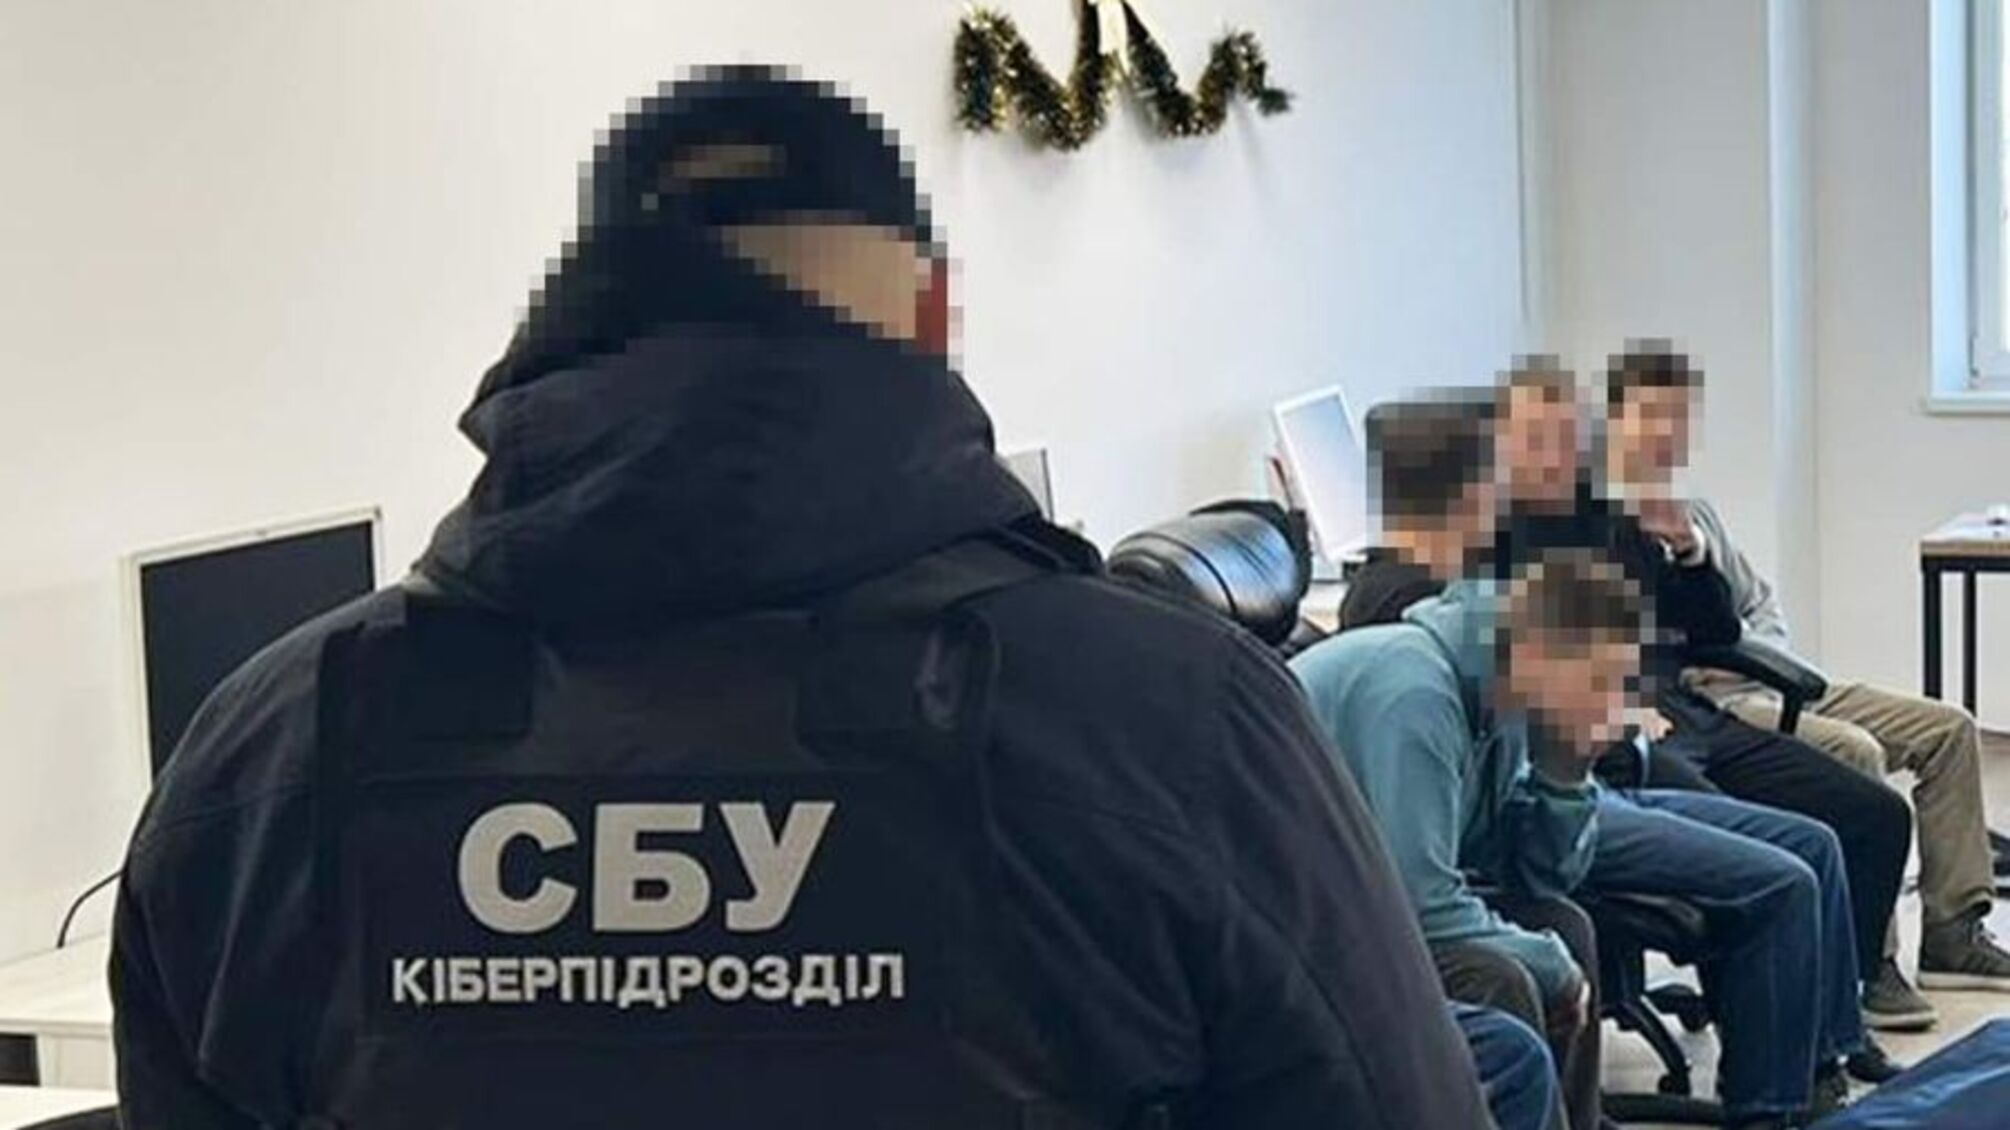 СБУ та Нацполіція ліквідували понад 100 шахрайських call-центрів, які викрадали персональні дані та гроші українців